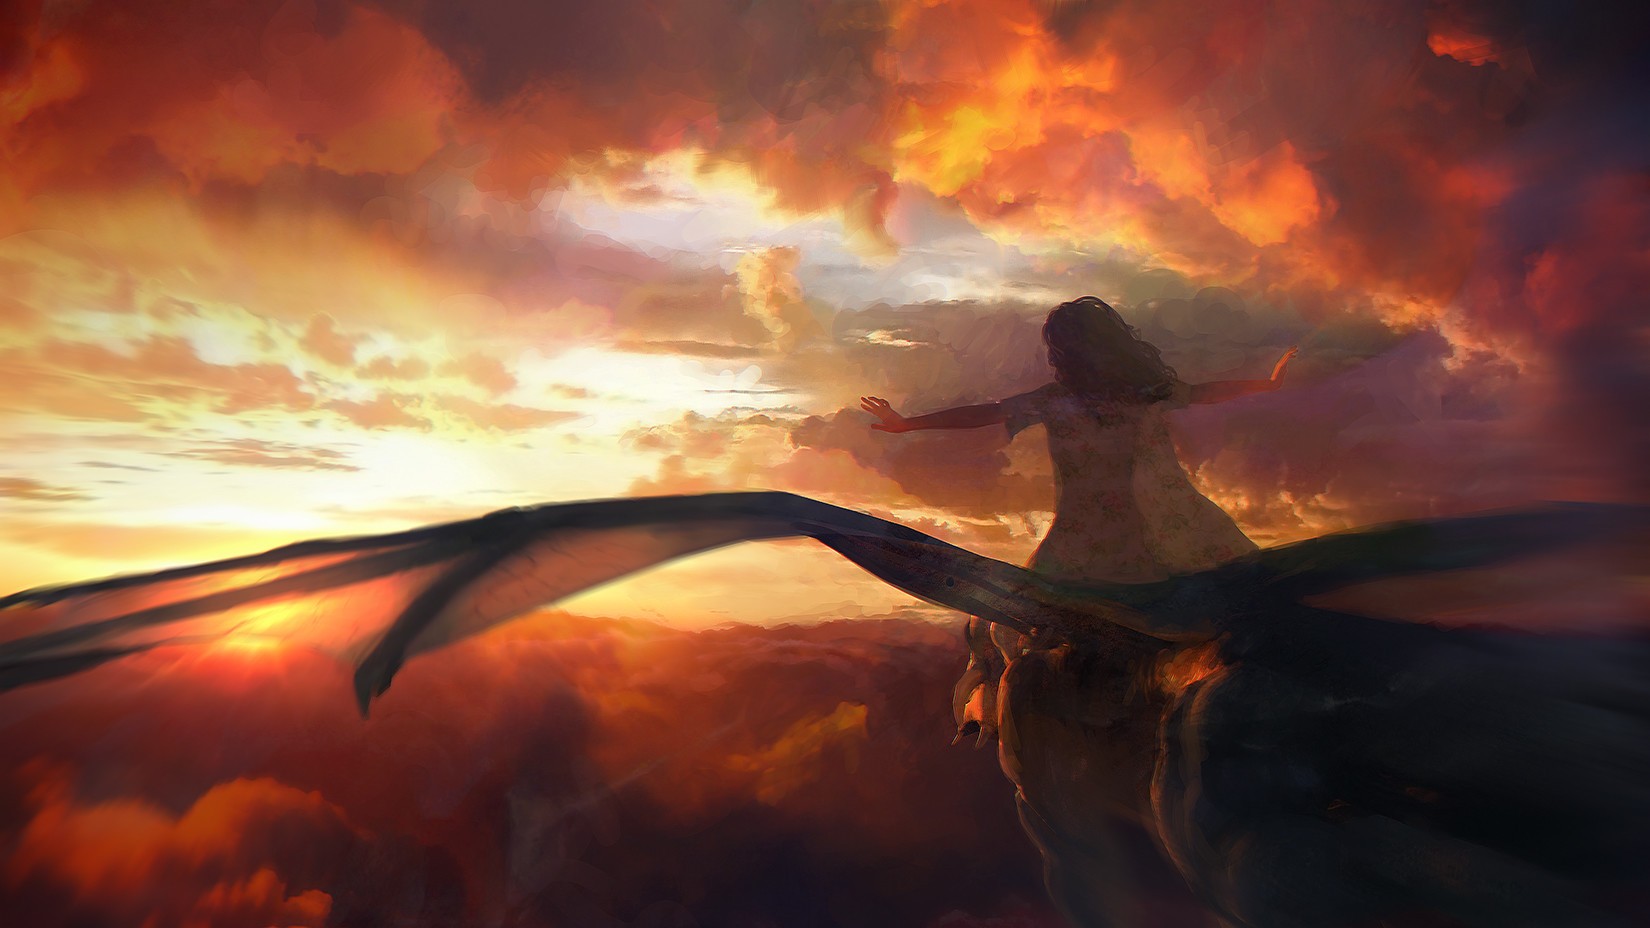 General 1650x928 fantasy art dragon clouds women women outdoors wings flying sky orange sky sunlight fantasy girl